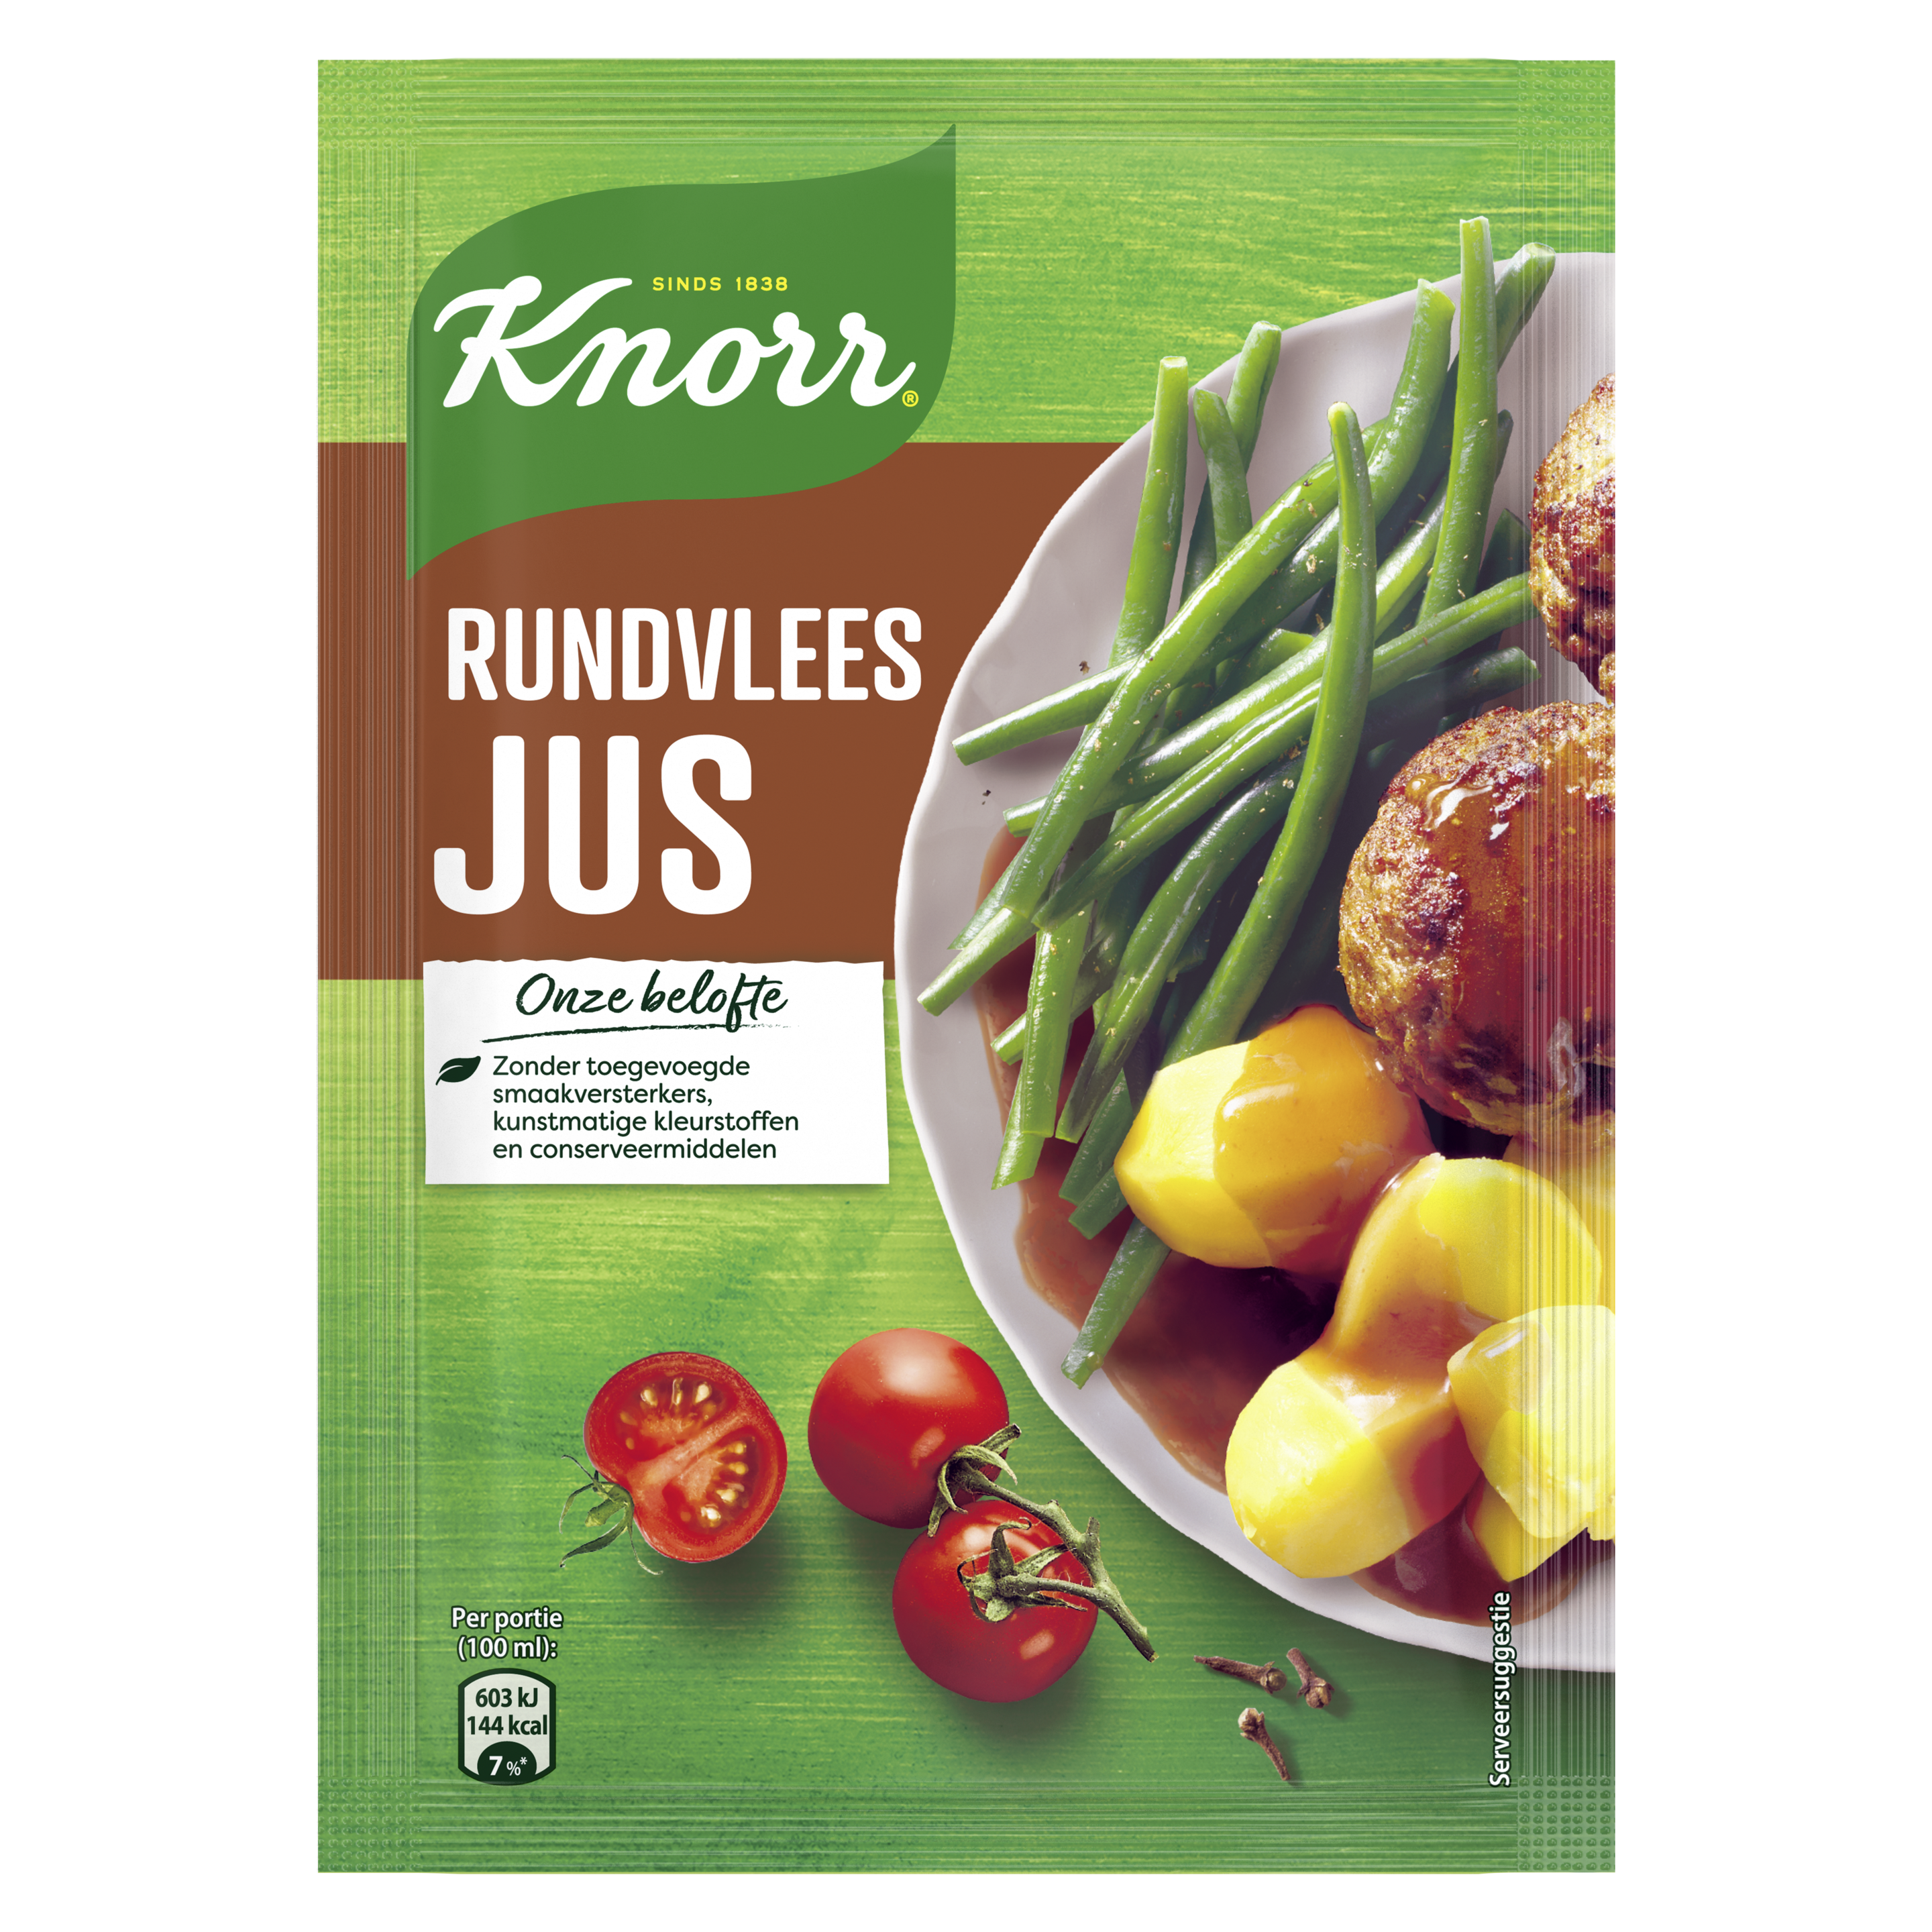 Rundvleesjus Knorr